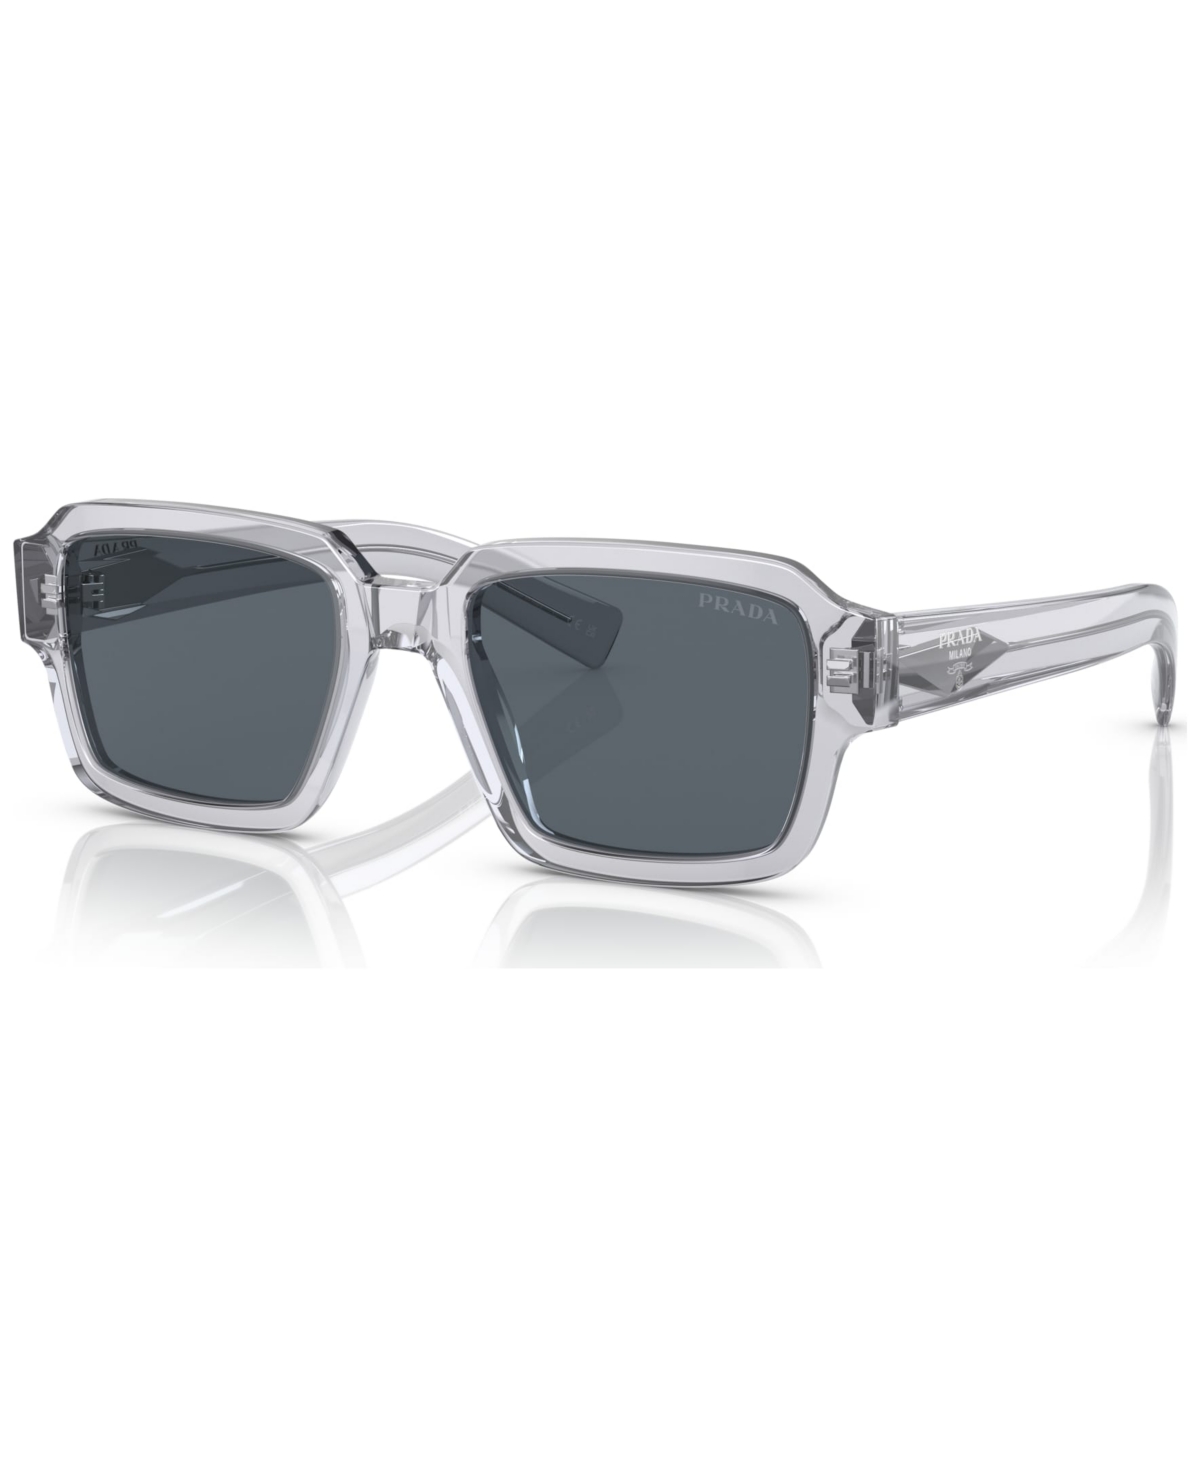 Prada Men's Sunglasses, Pr 02zs52-x In Transparent Gray